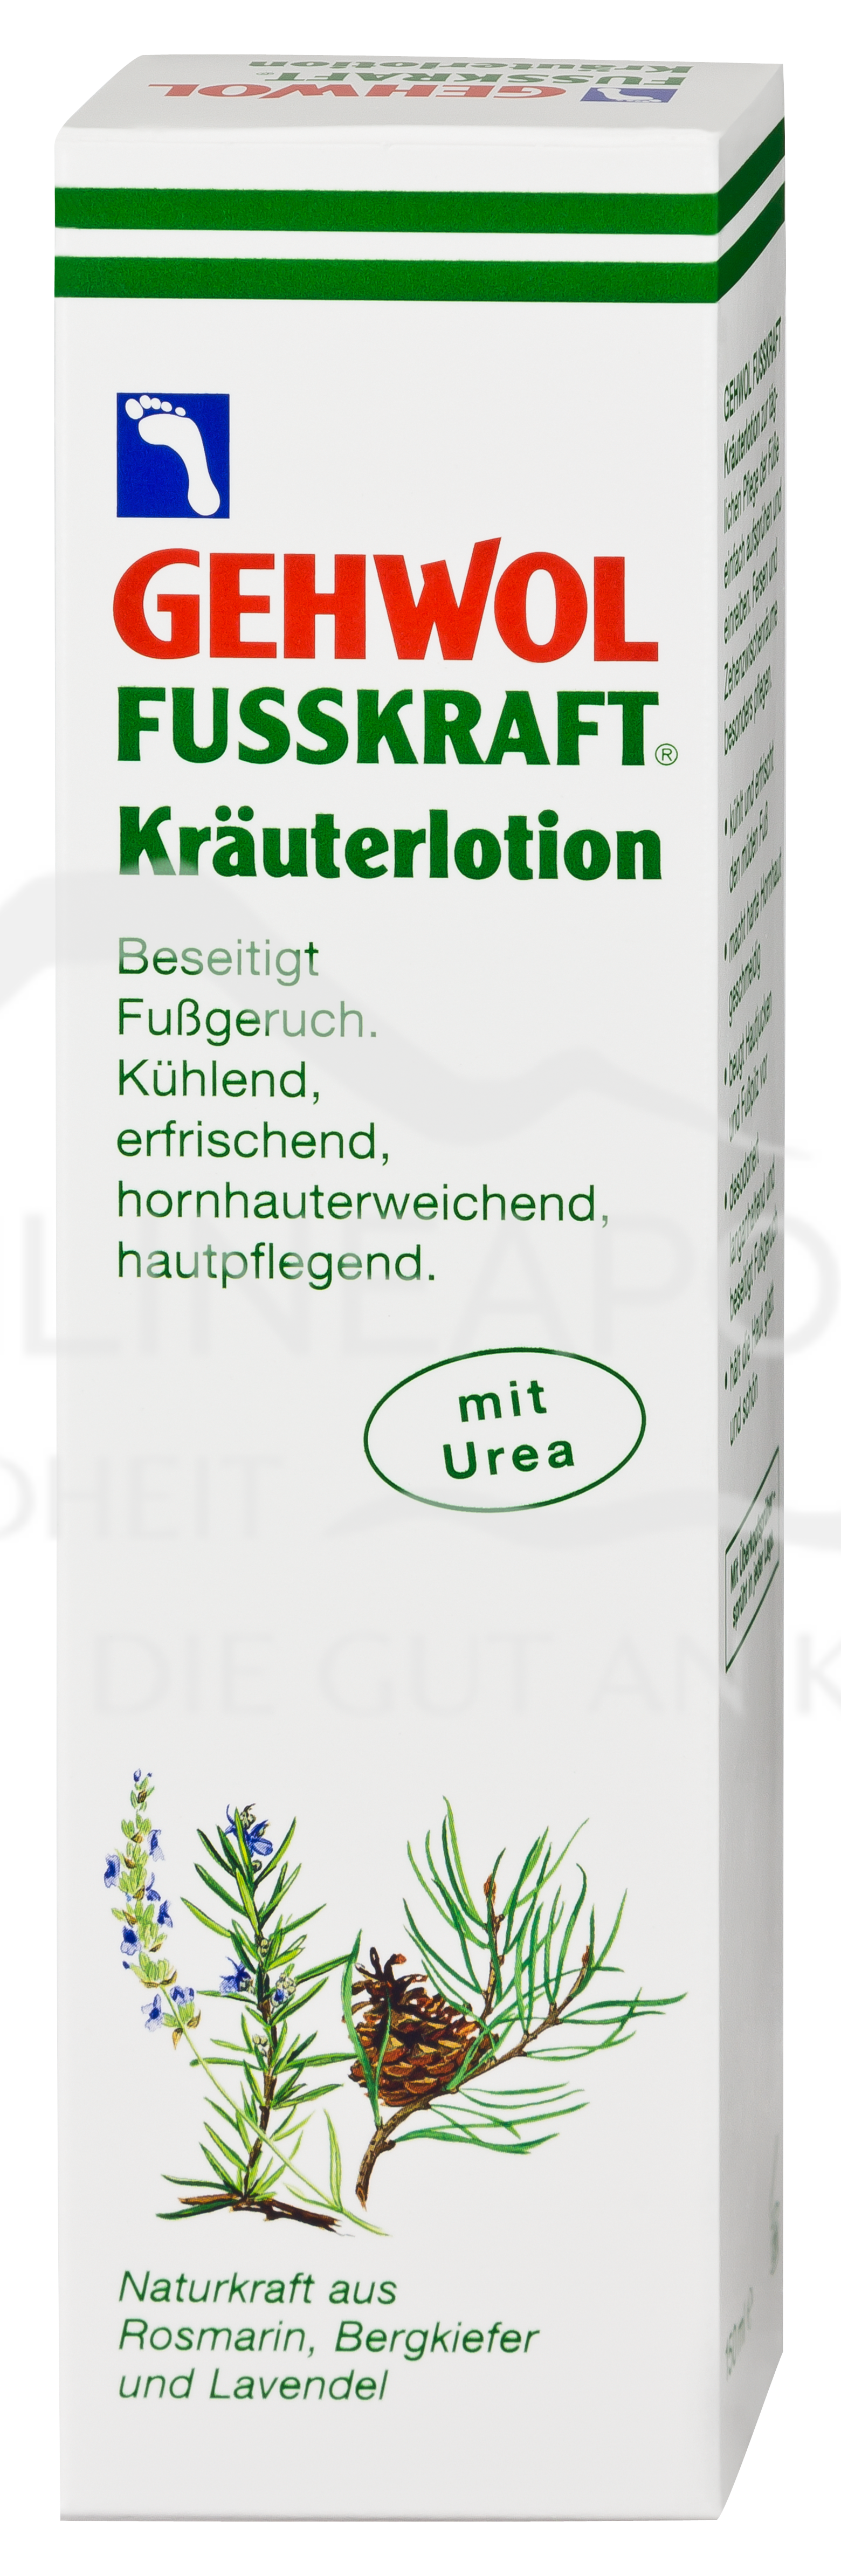 GEHWOL® FUSSKRAFT Kräuterlotion